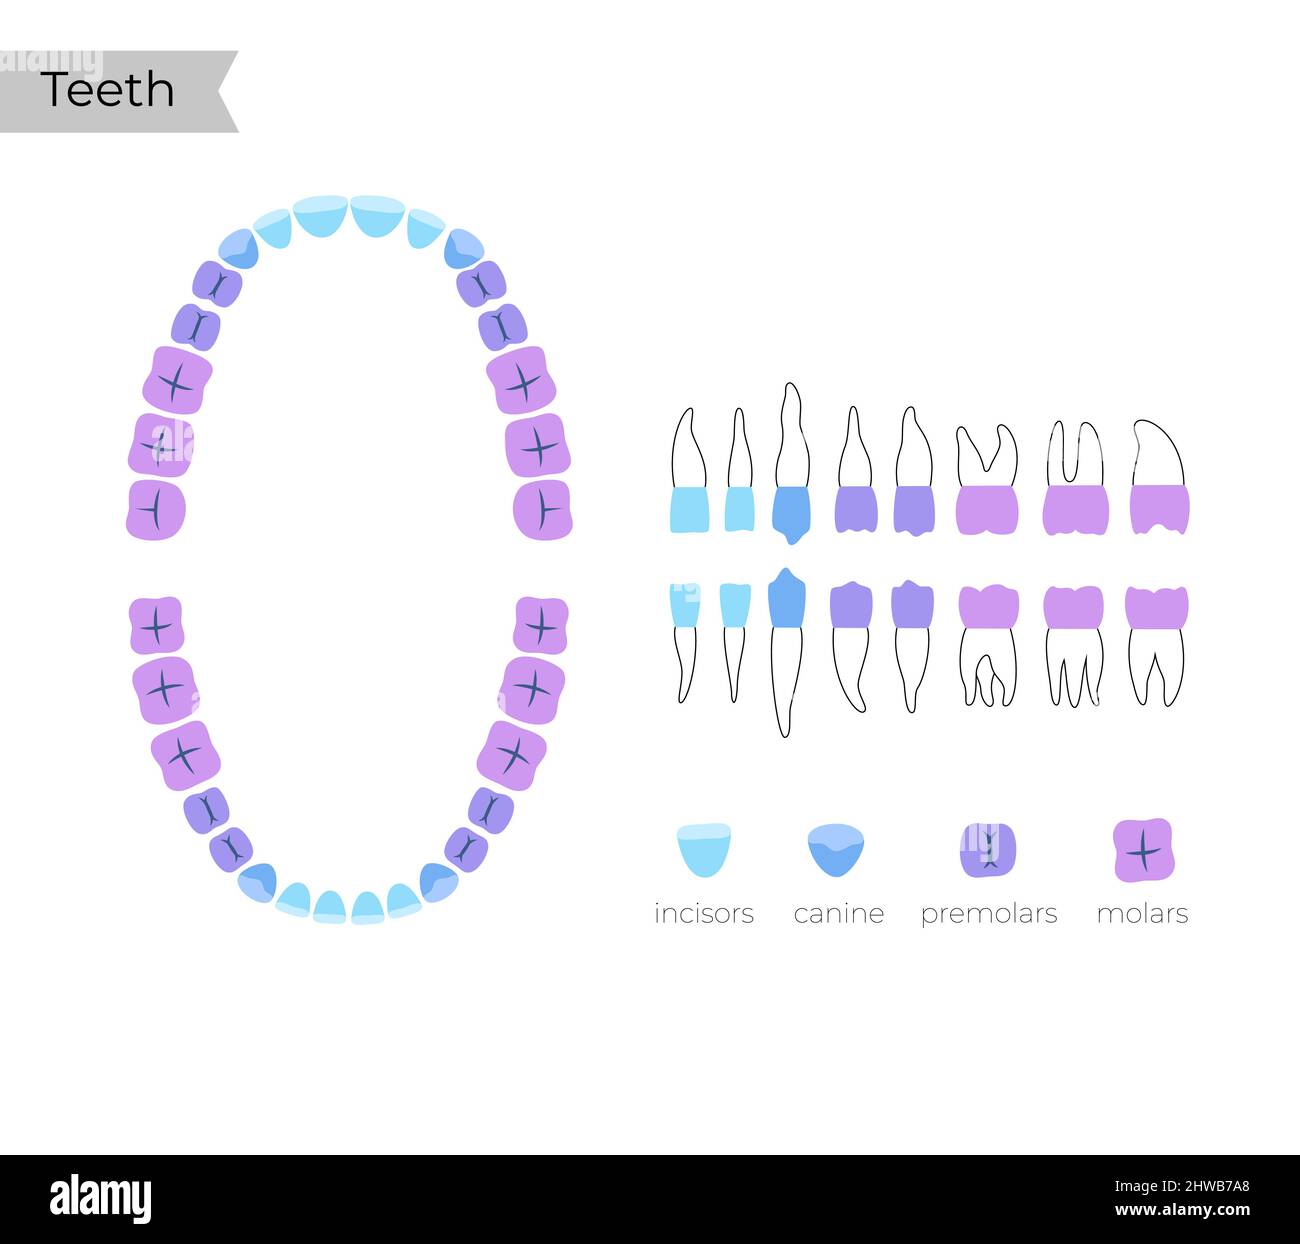 Human teeth types, illustration Stock Photo